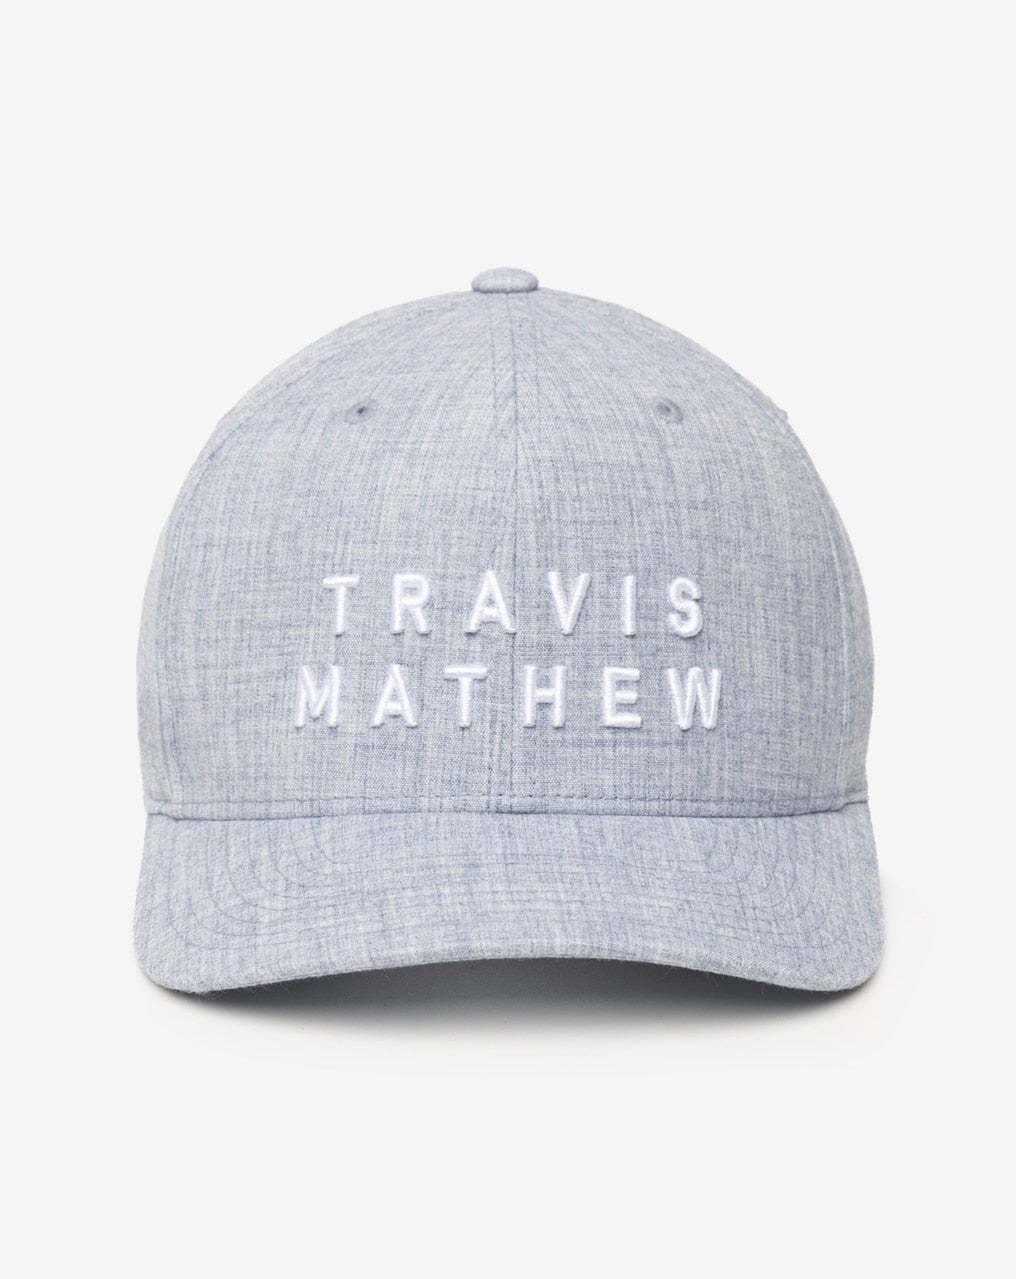 Travis Mathew Rockdale SnapBack Hat